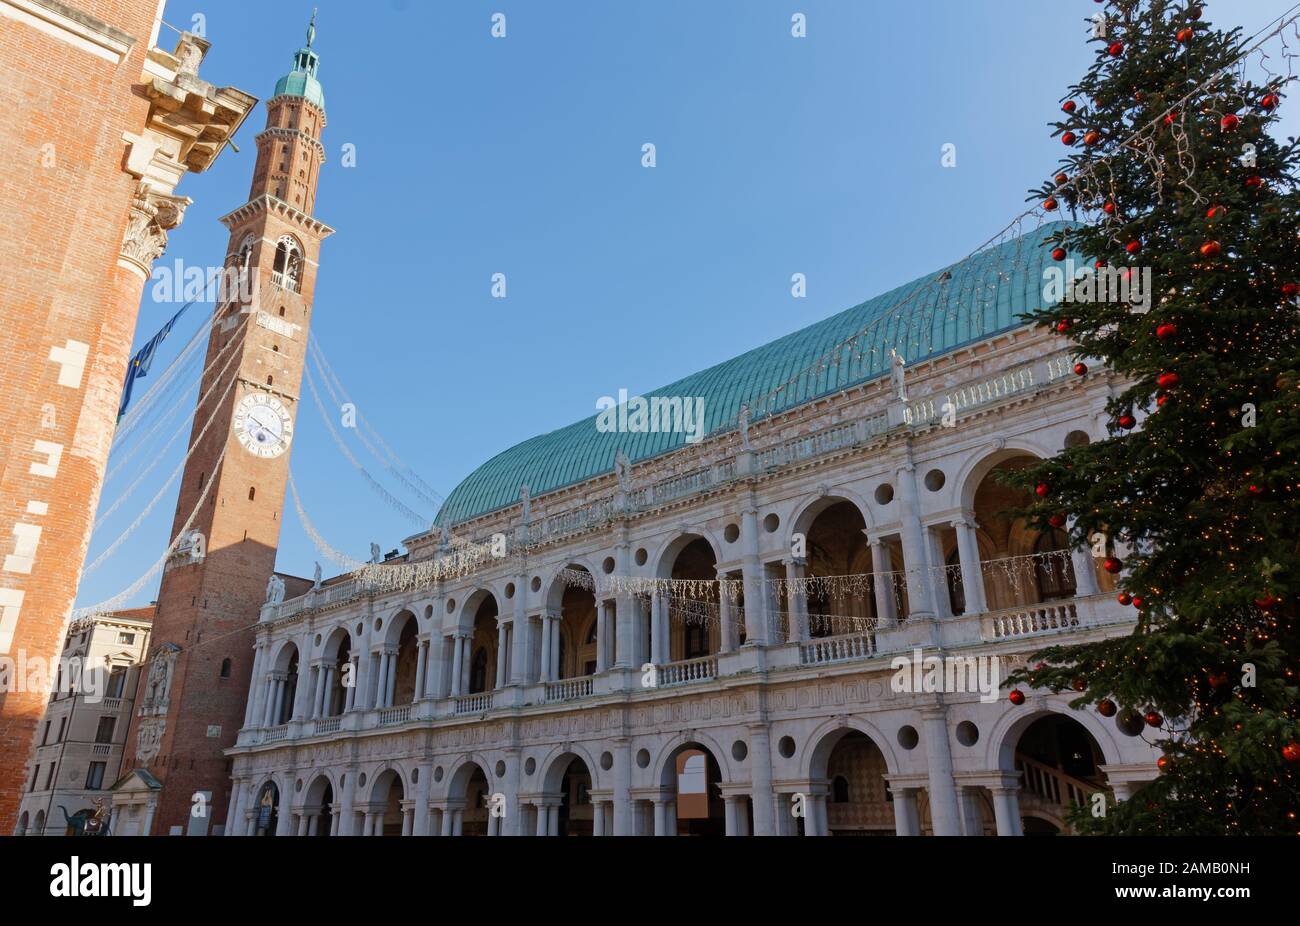 Basílica Palladiana y la torre cívica Bissara en la Piazza dei Signori en Vicenza, Italia, decoradas durante las vacaciones de Navidad Foto de stock